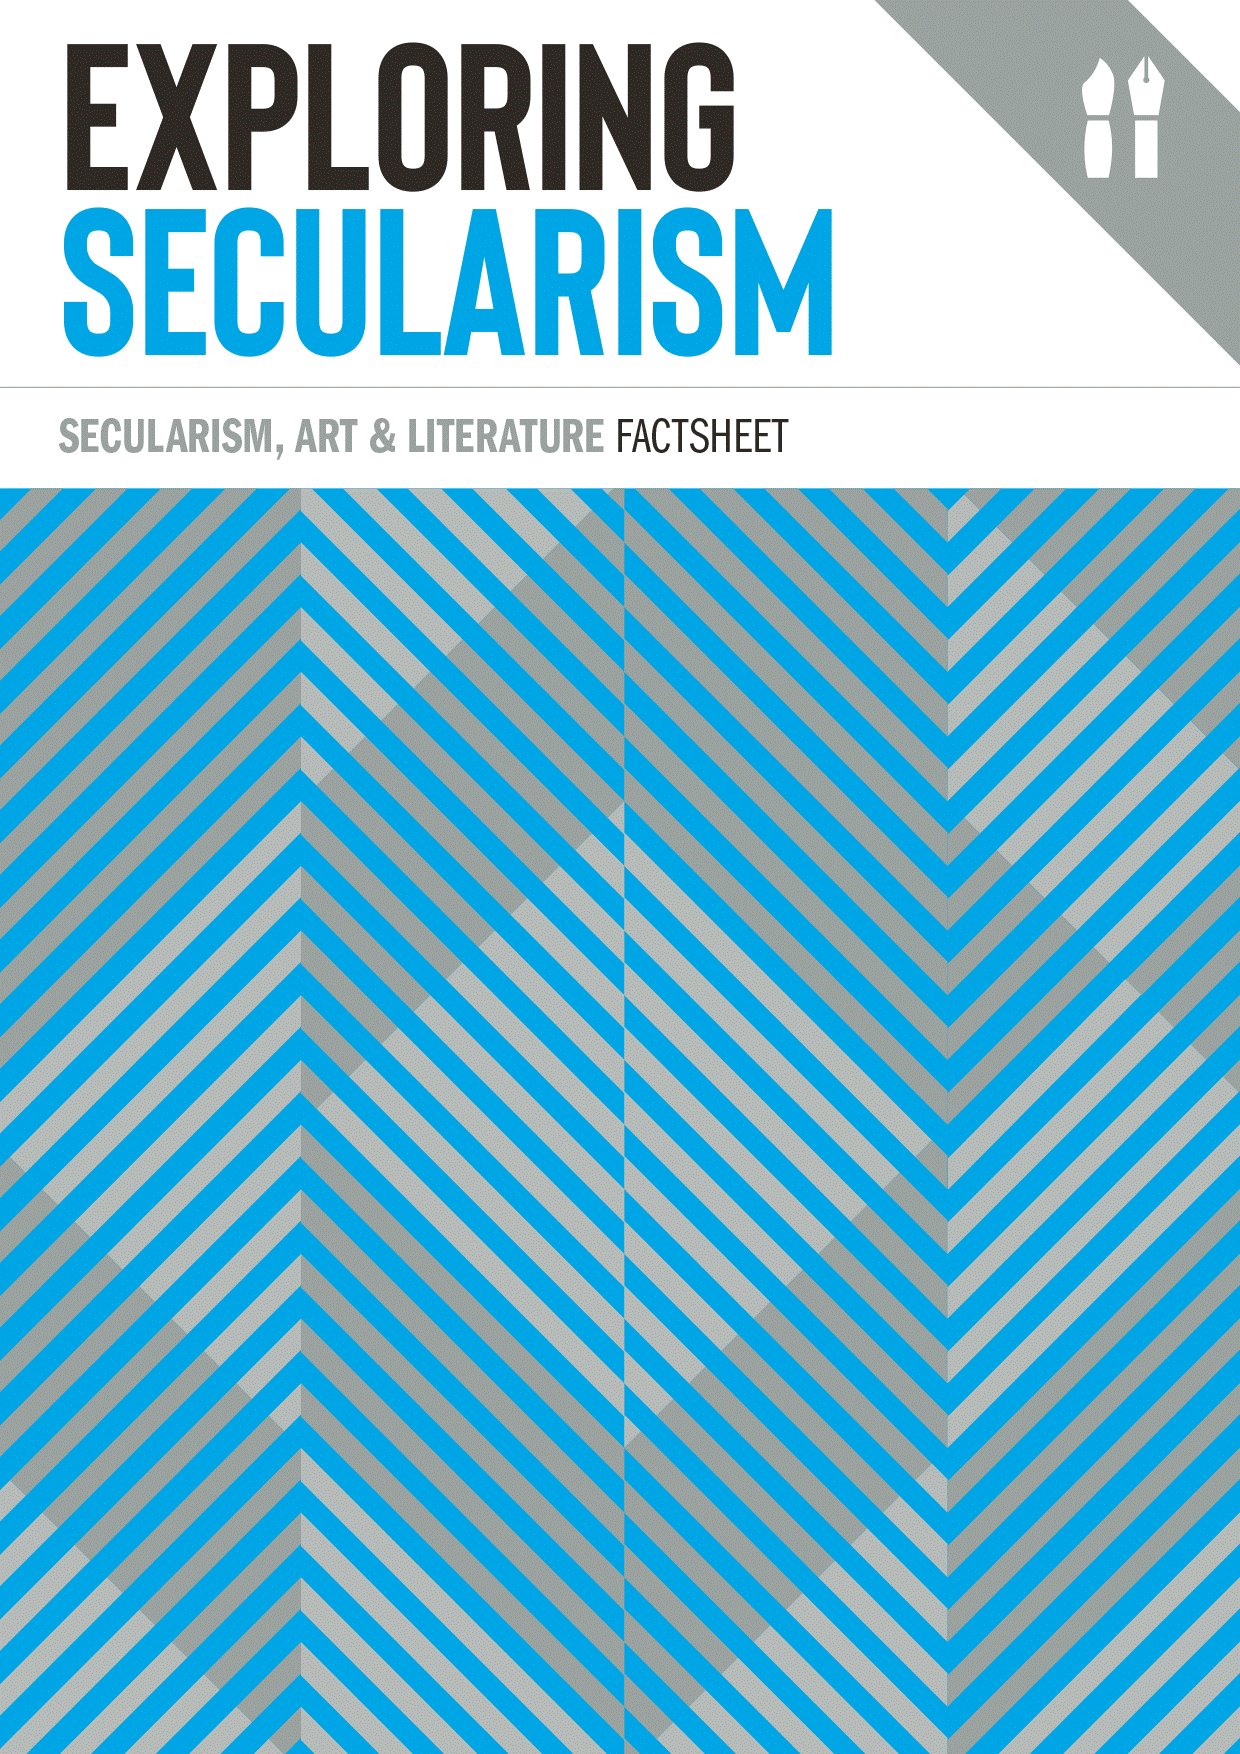 Secularism, Art & Literature